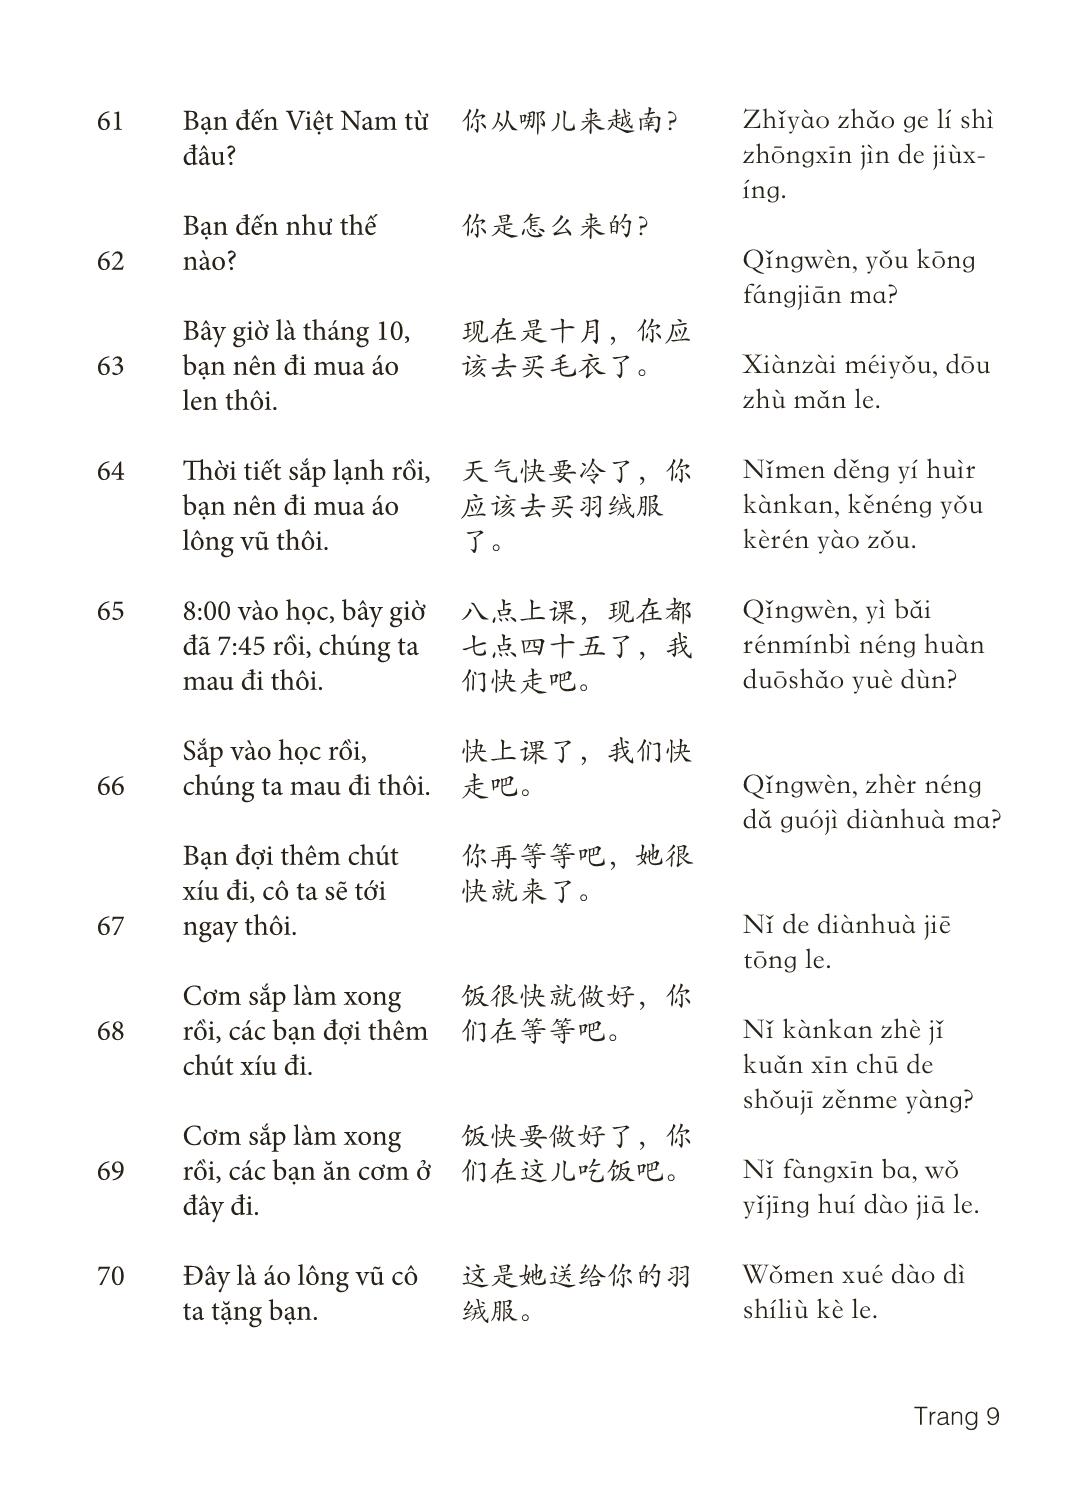 3000 Câu đàm thoại tiếng Hoa - Phần 16 trang 9